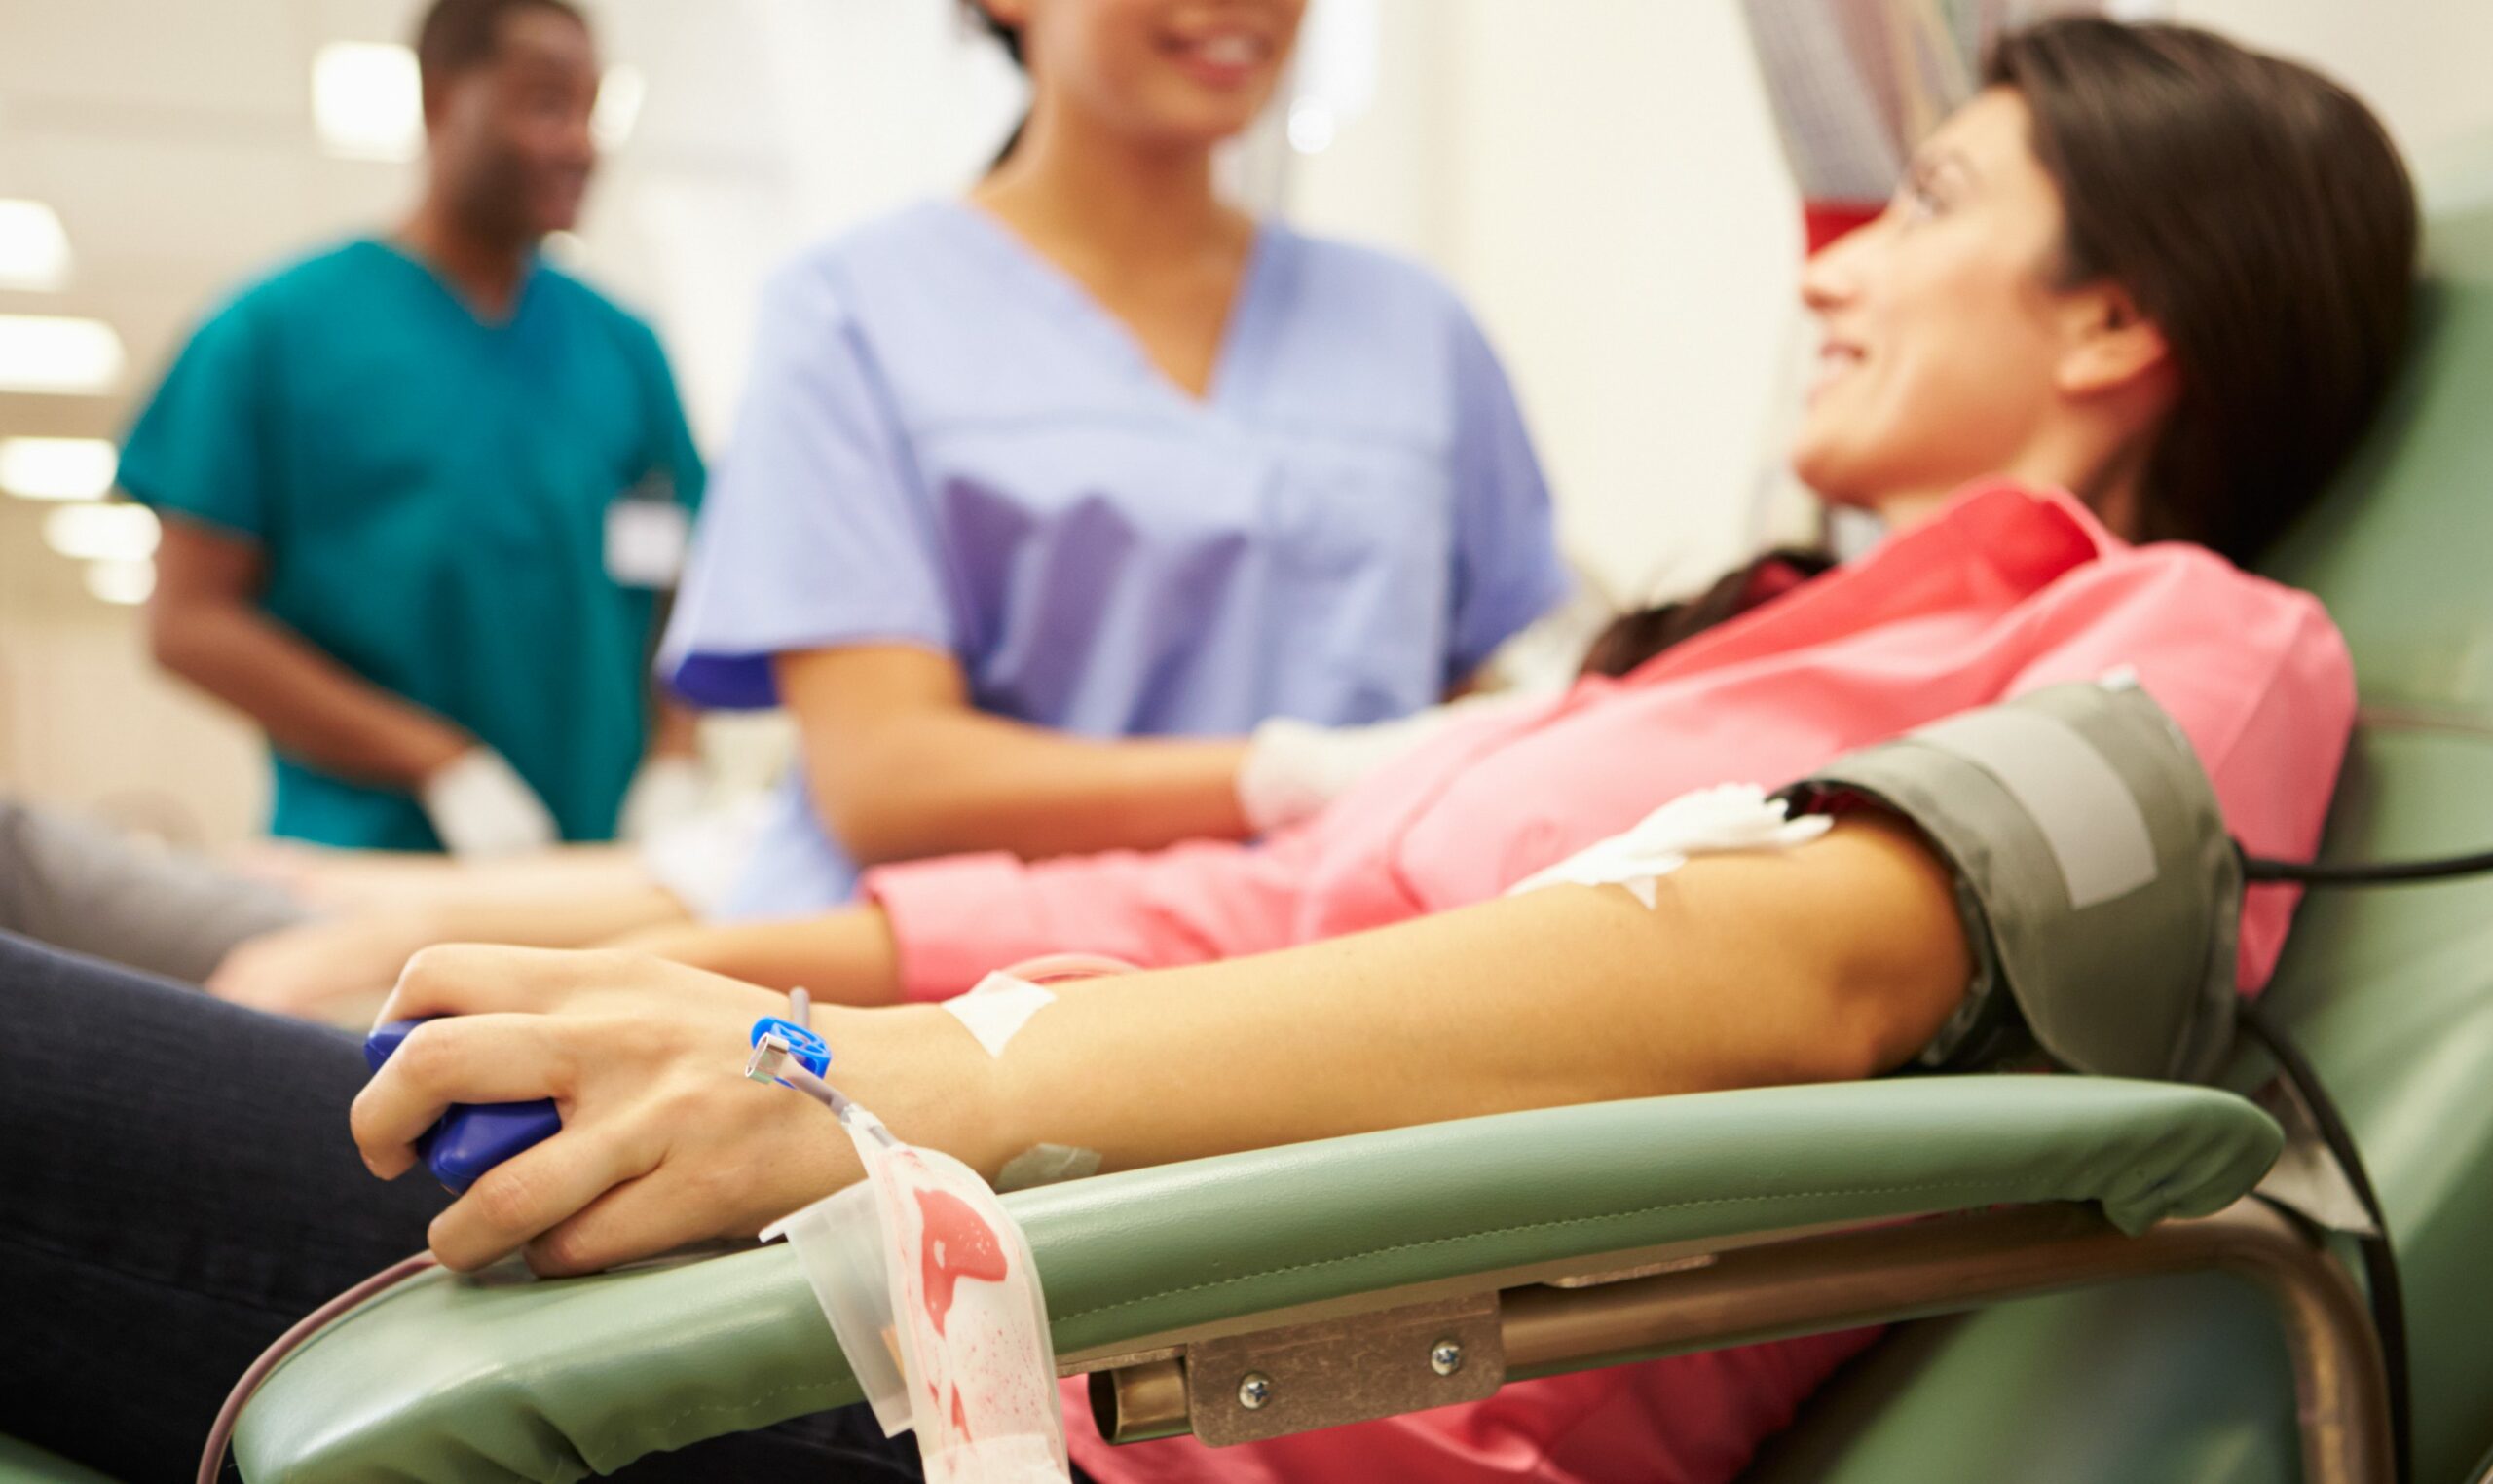 Donazioni sangue: sistema veneto a rischio per carenza di medici e infermieri. La Regione intervenga.